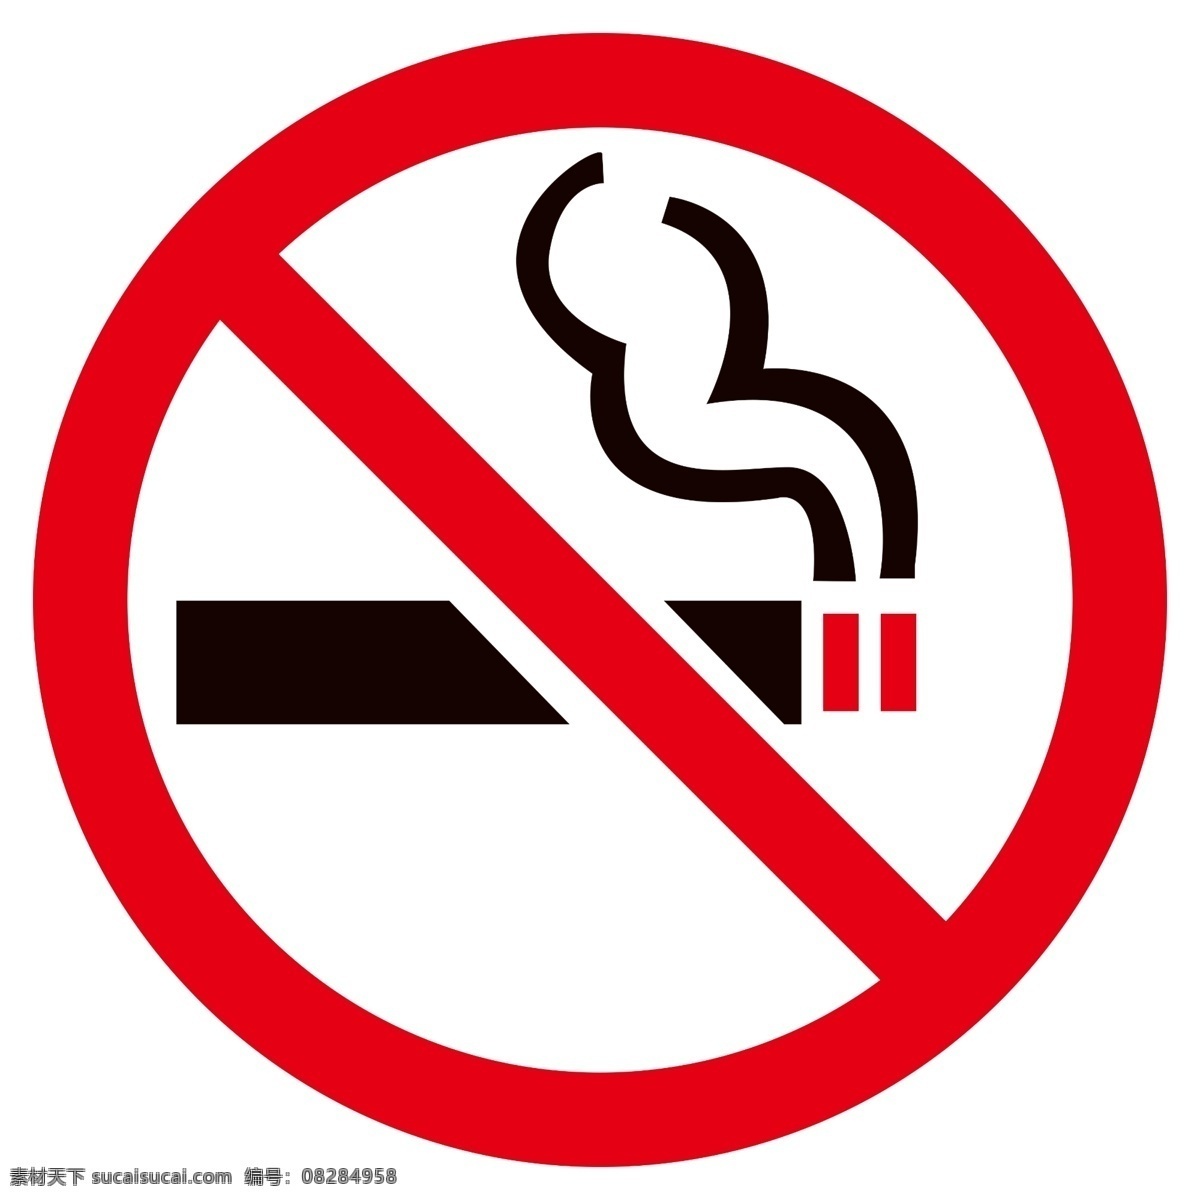 禁止吸烟 严禁吸烟 吸烟区 禁止吸烟图标 严禁吸烟图标 吸烟区图标